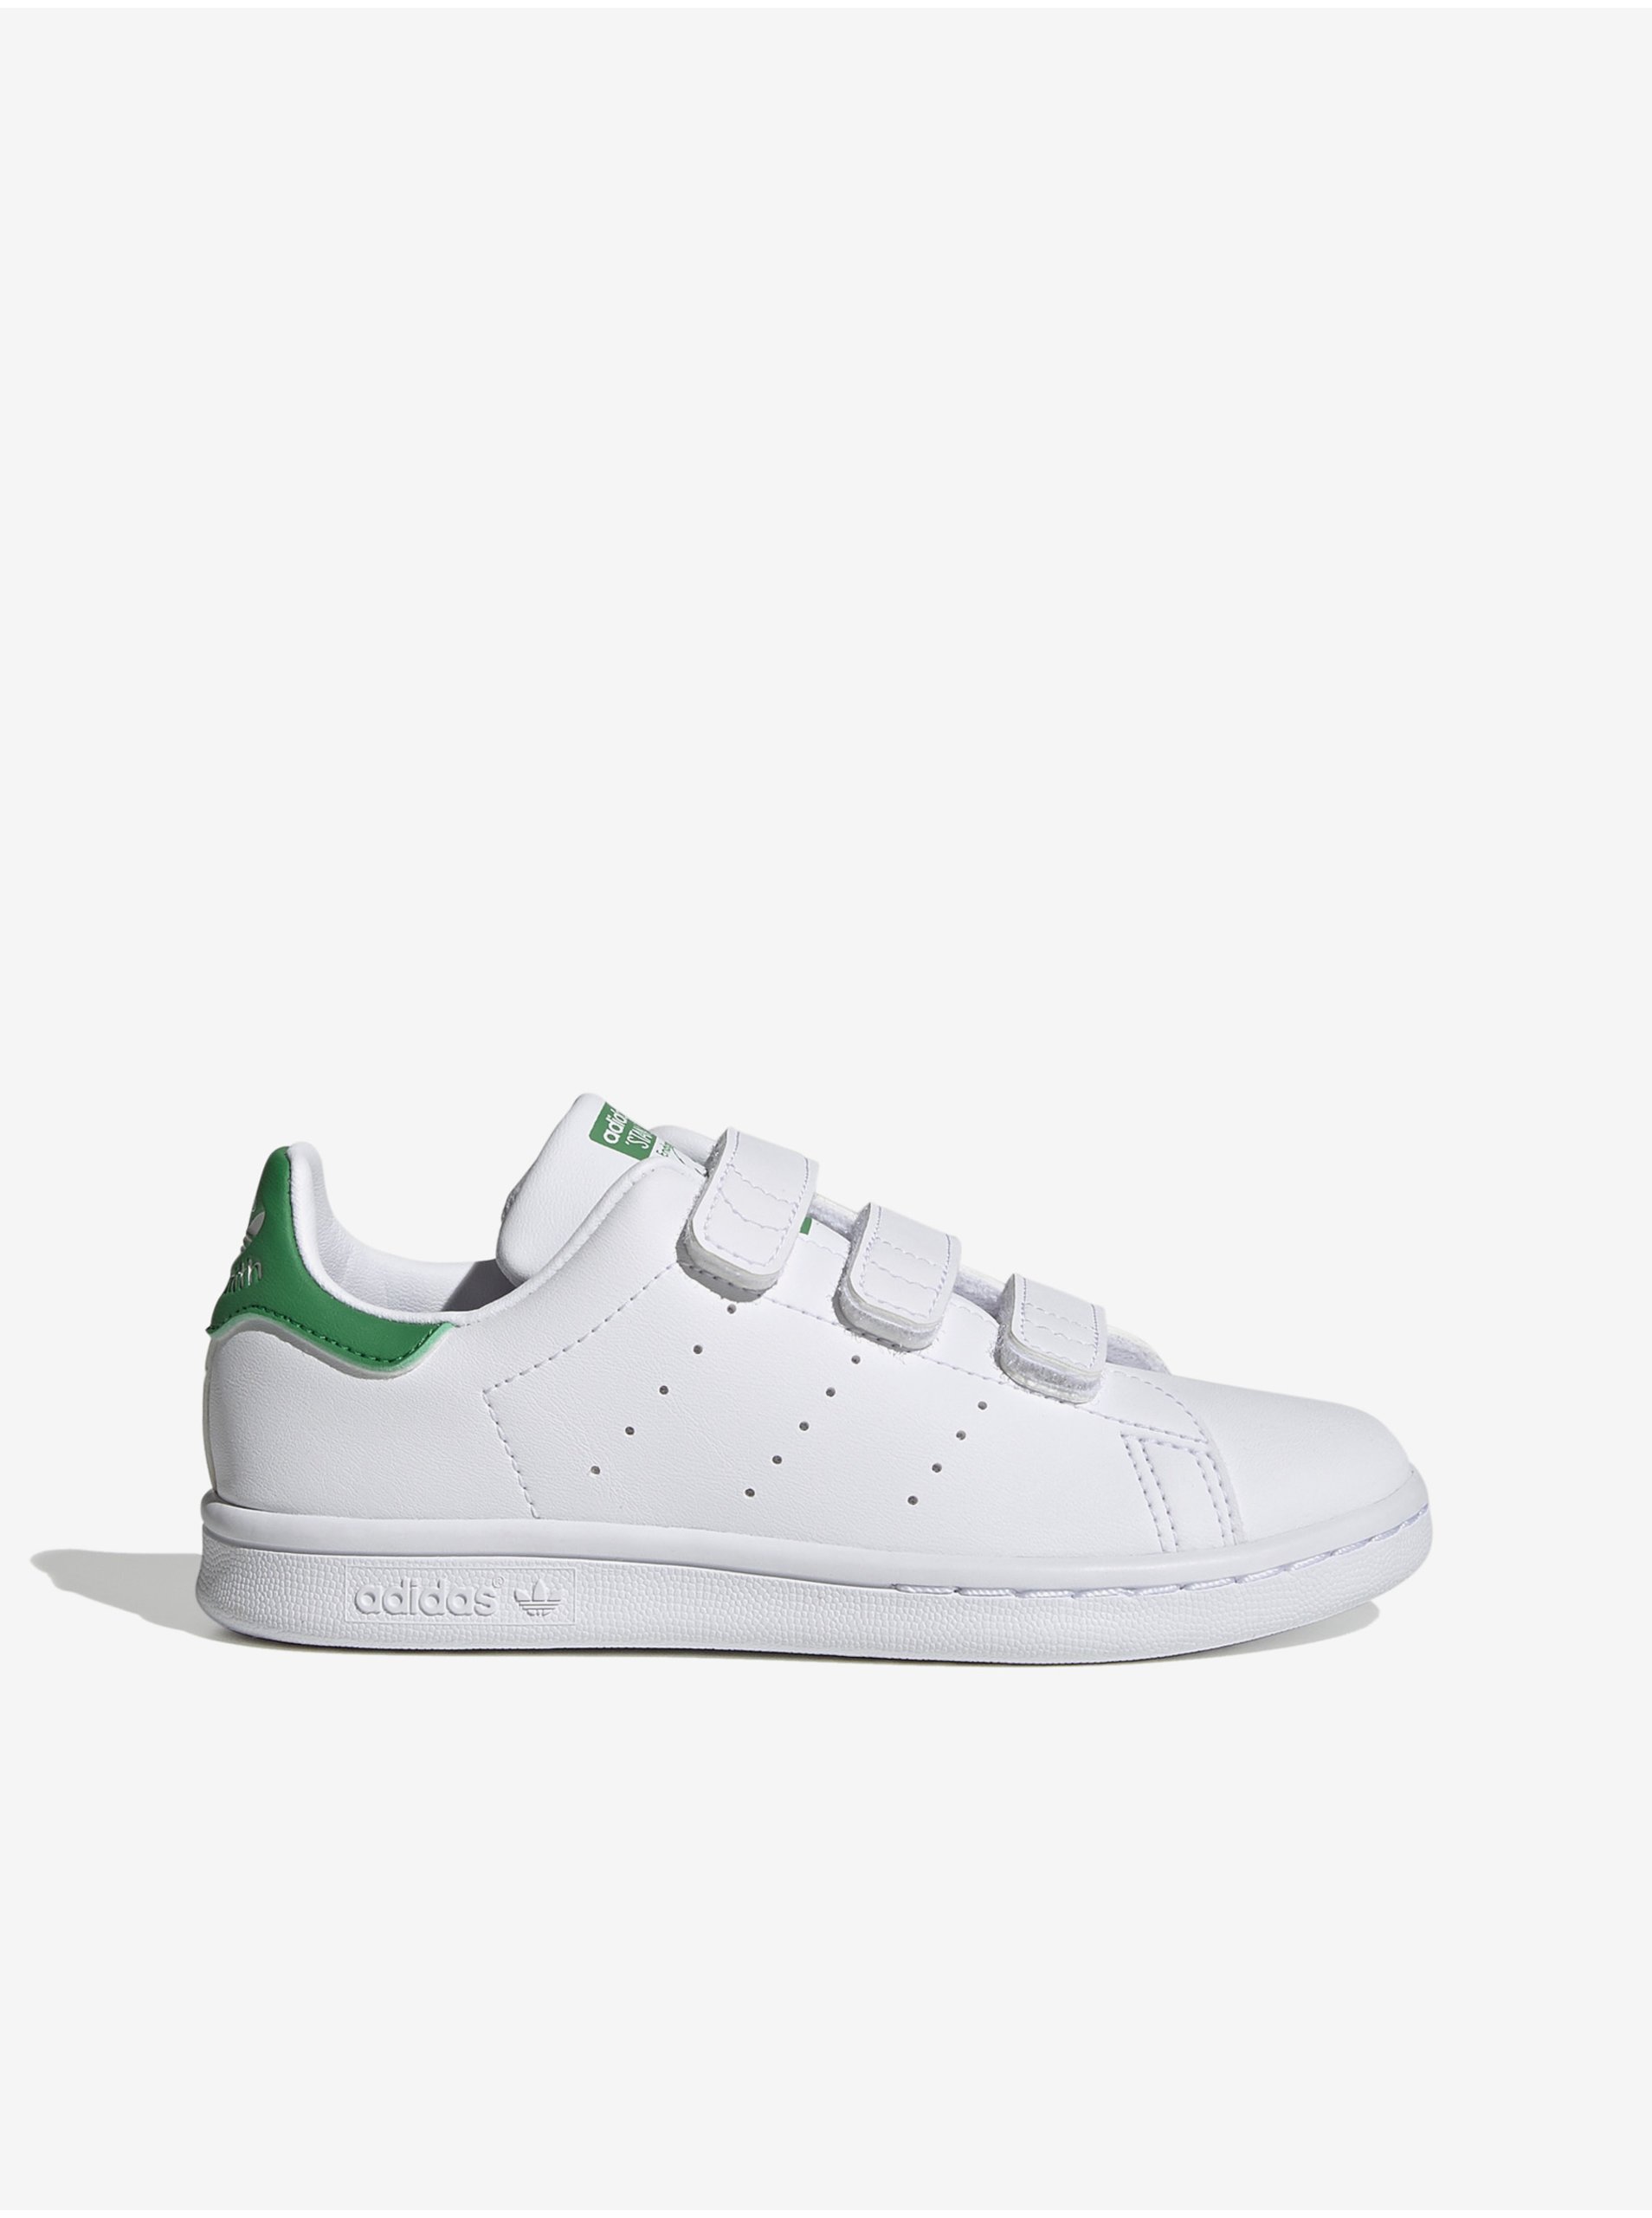 E-shop adidas Originals - biela, zelená